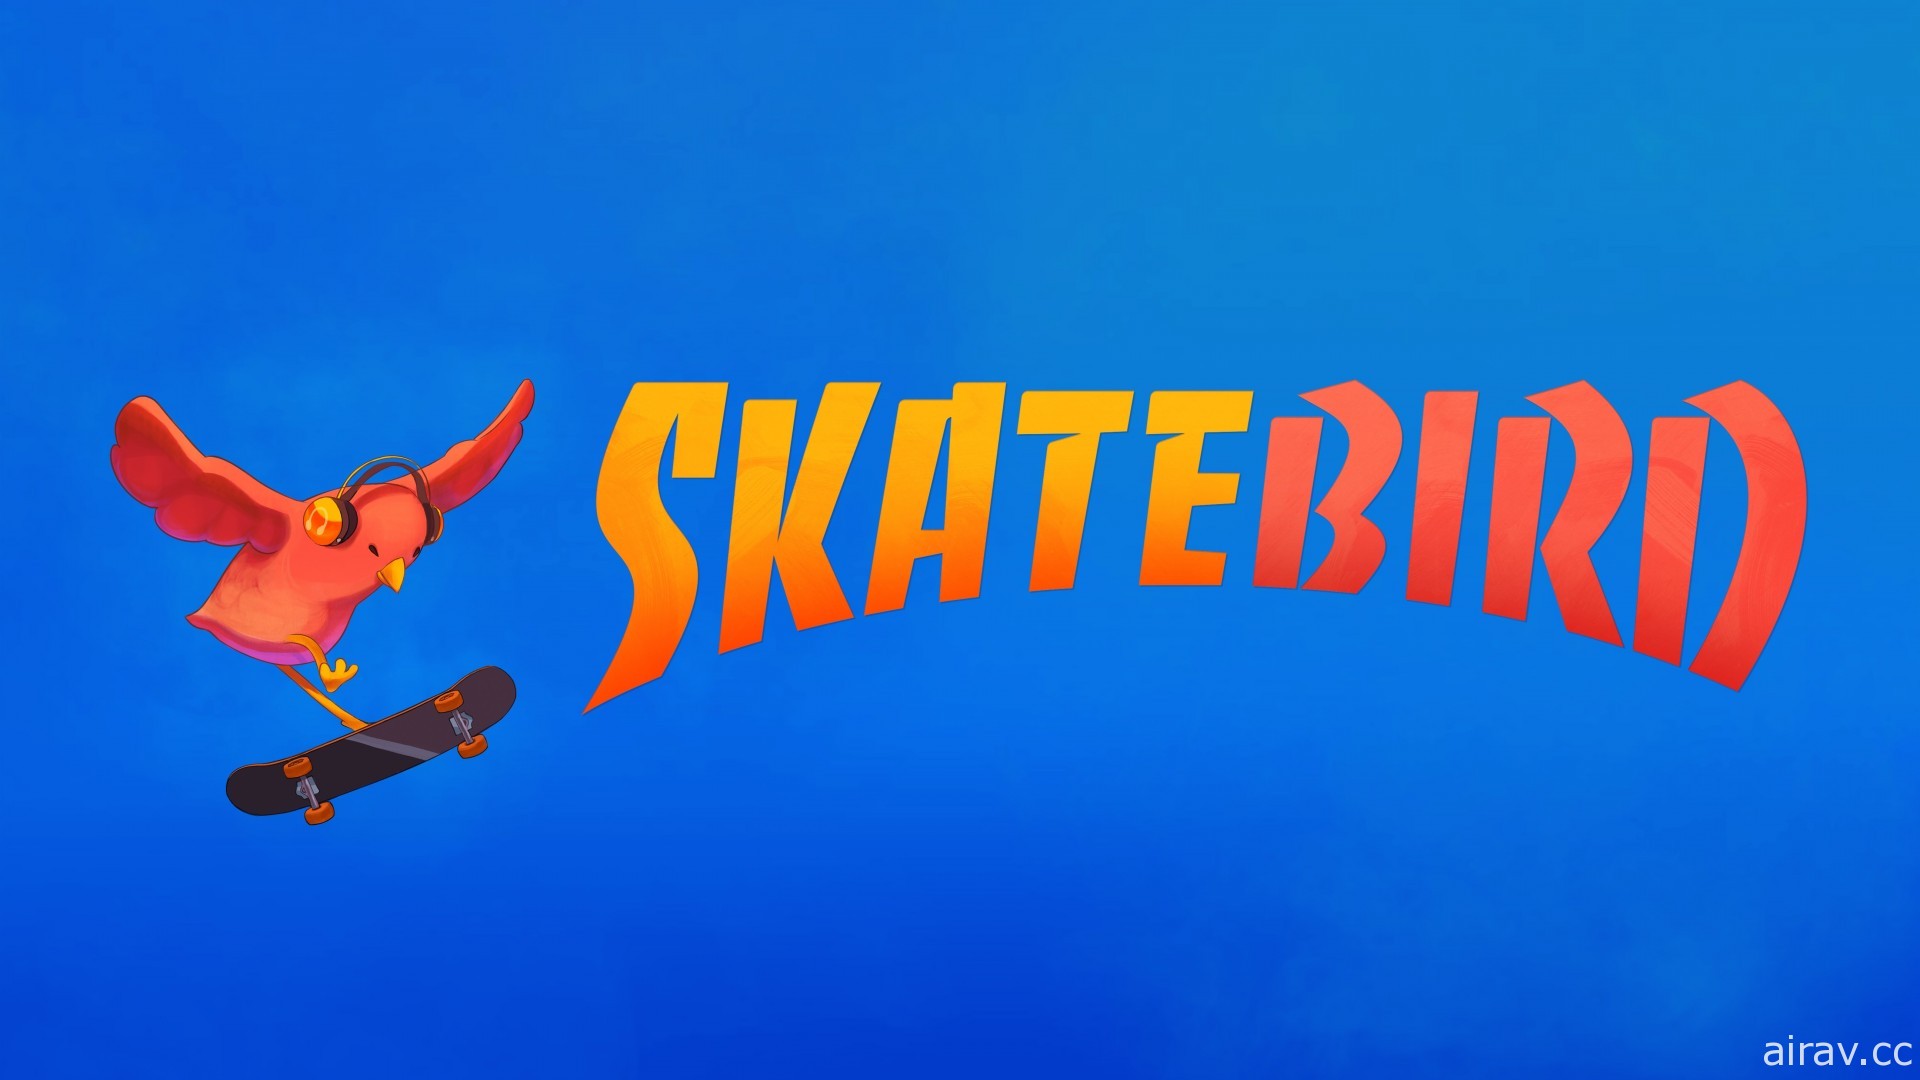 滑板競技新作《滑板鳥》正式上市 翻過釘書機、紙板展現高難度滑板技巧